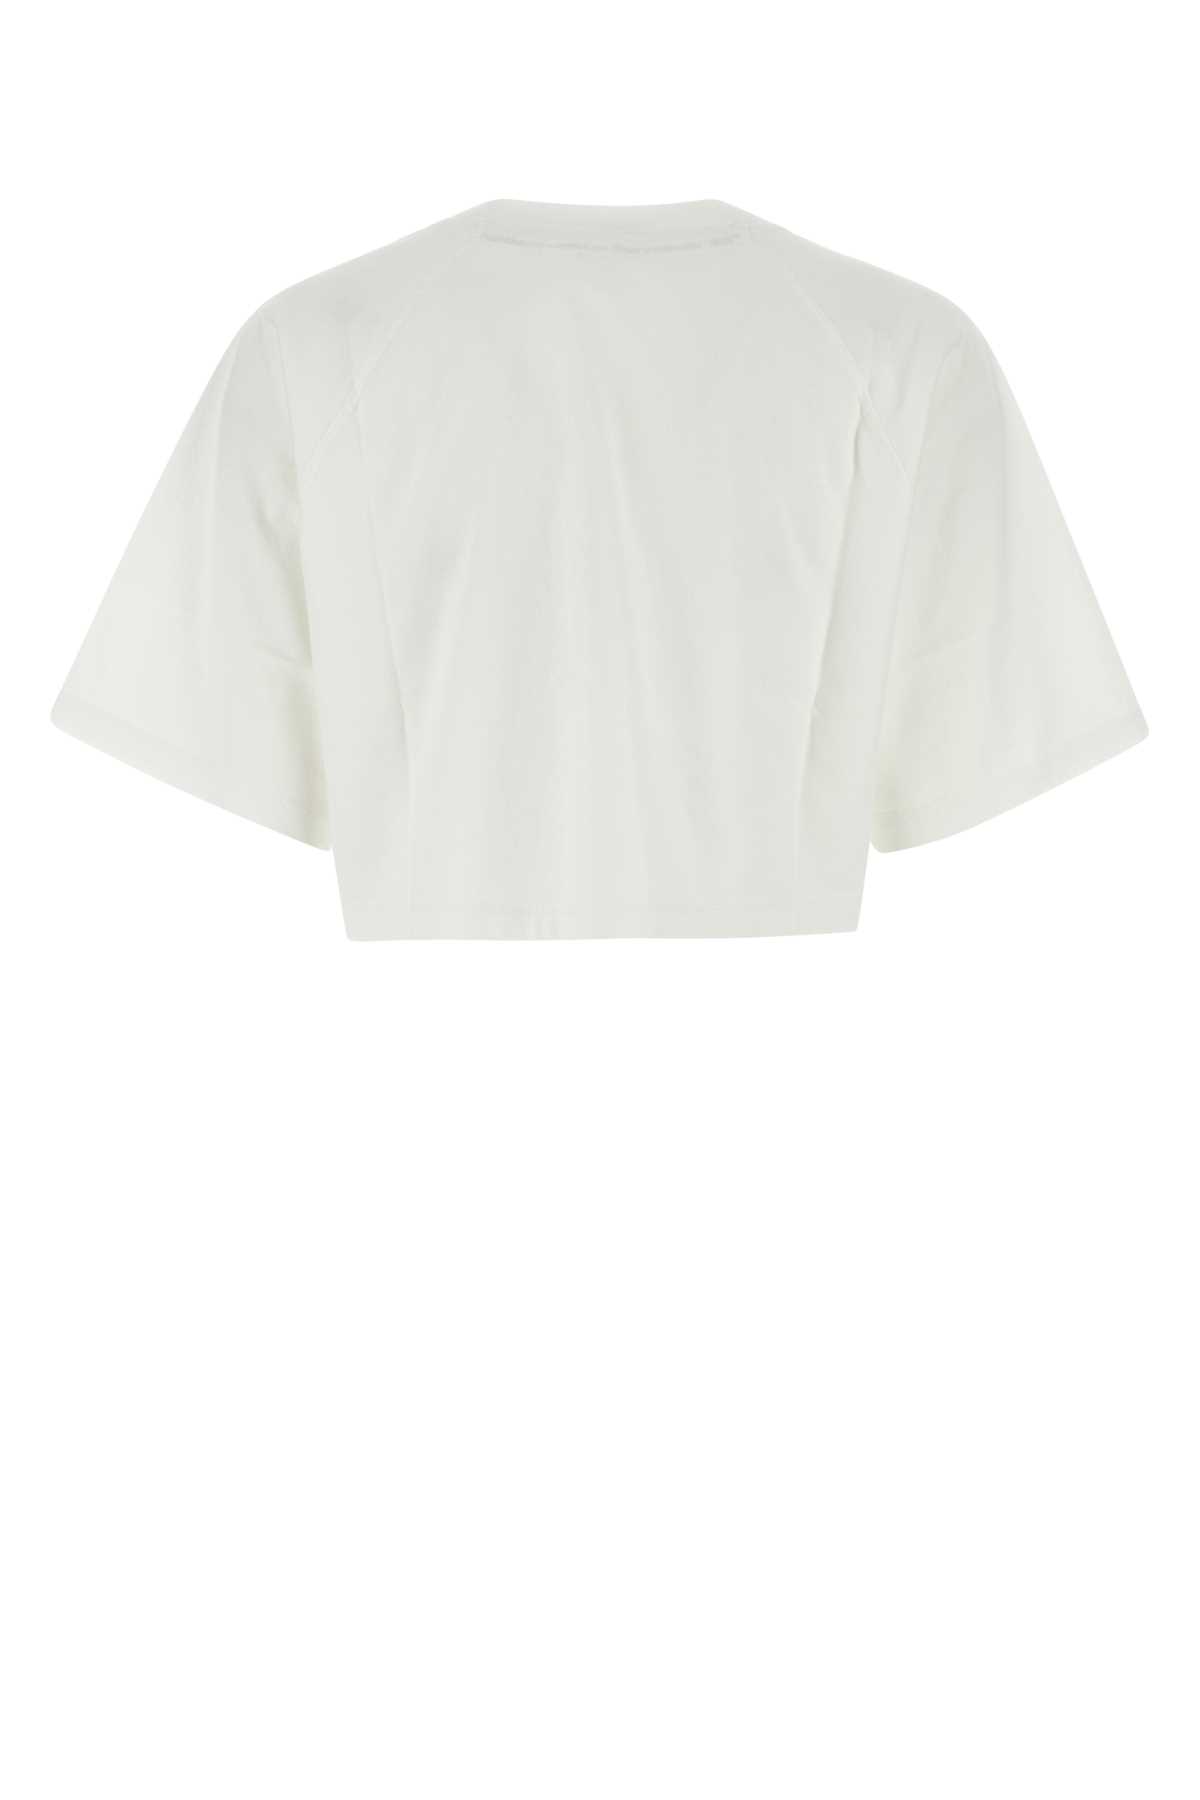 Kenzo White Cotton T-shirt In Offwhite